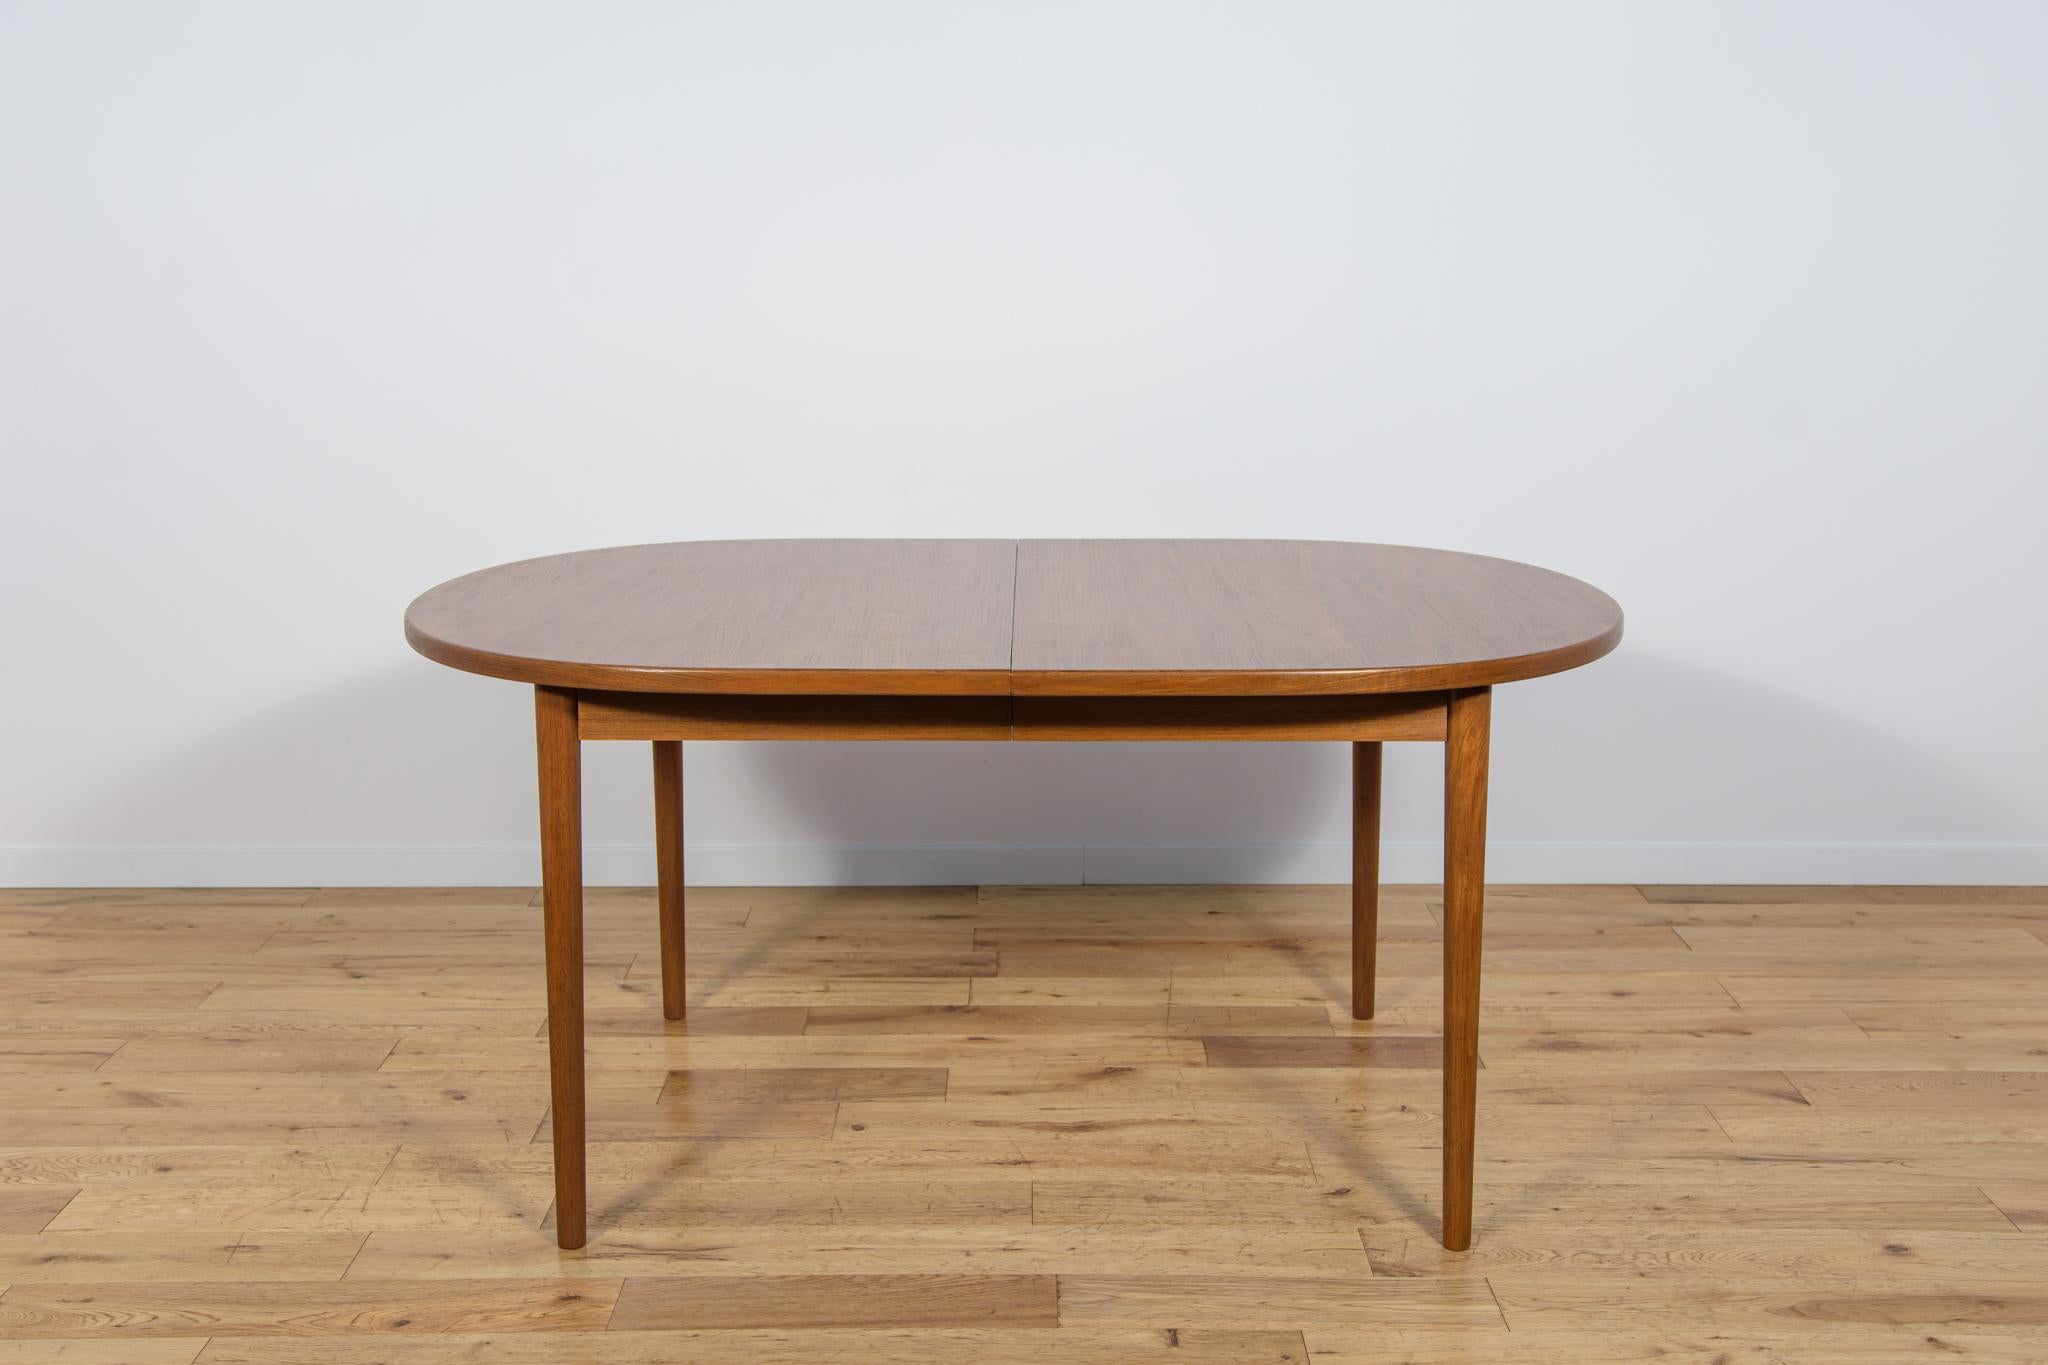 Cette grande table extensible en teck a été conçue dans les années 1960 par Nils Jonsson pour le fabricant suédois Troeds. Elle a été entièrement rénovée, nettoyée des vieilles surfaces, peinte avec une teinture pour chêne et finie avec un vernis